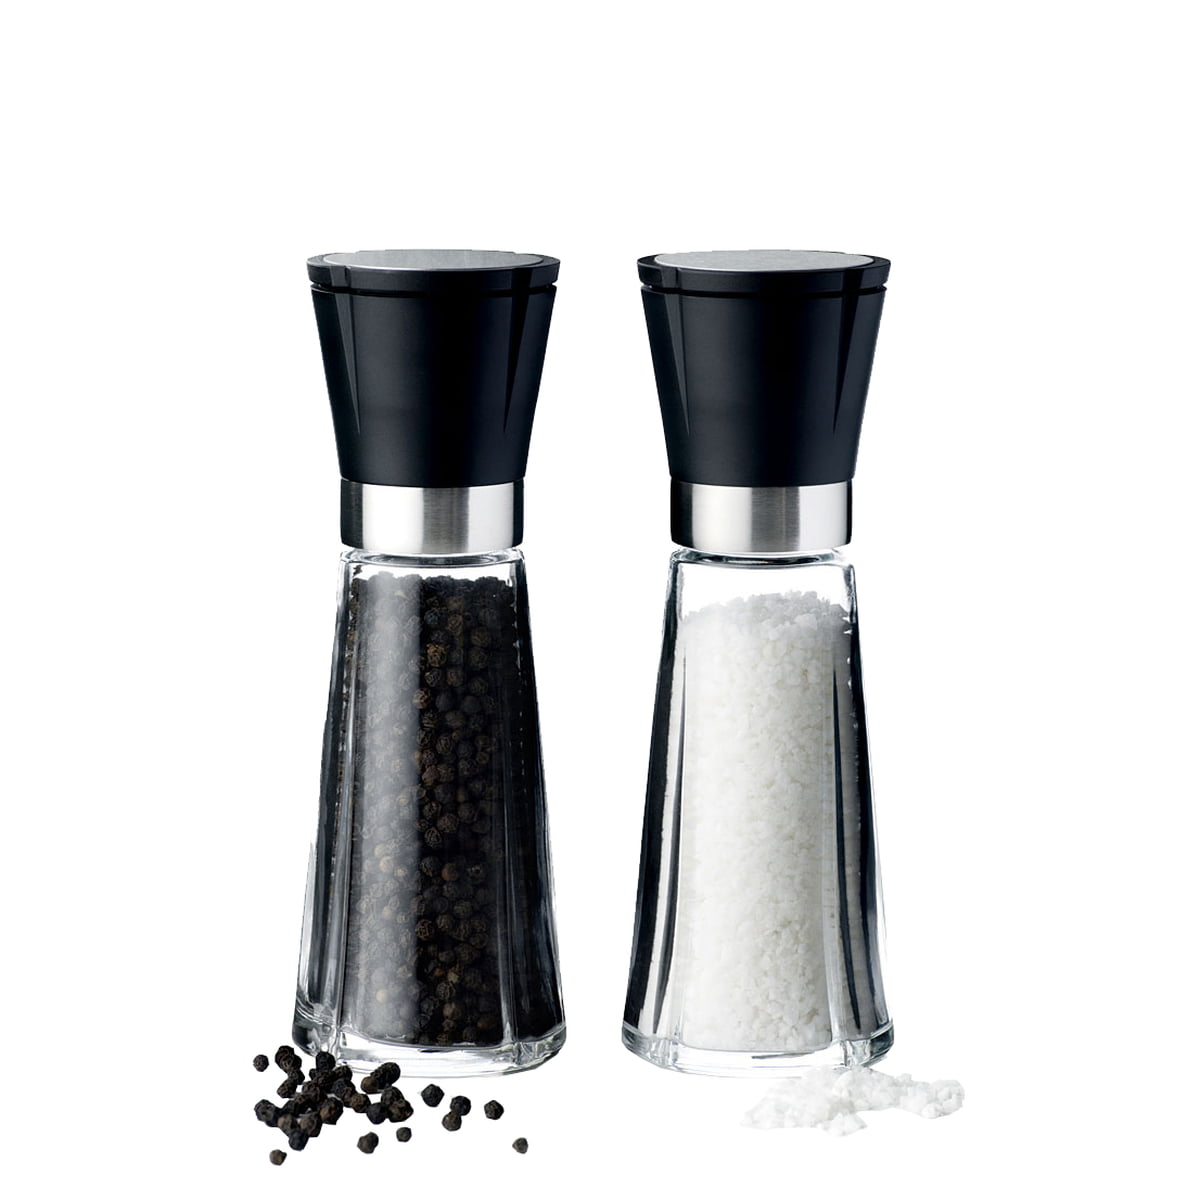 Rosendahl - RÅ Salt/pepper and spice mill